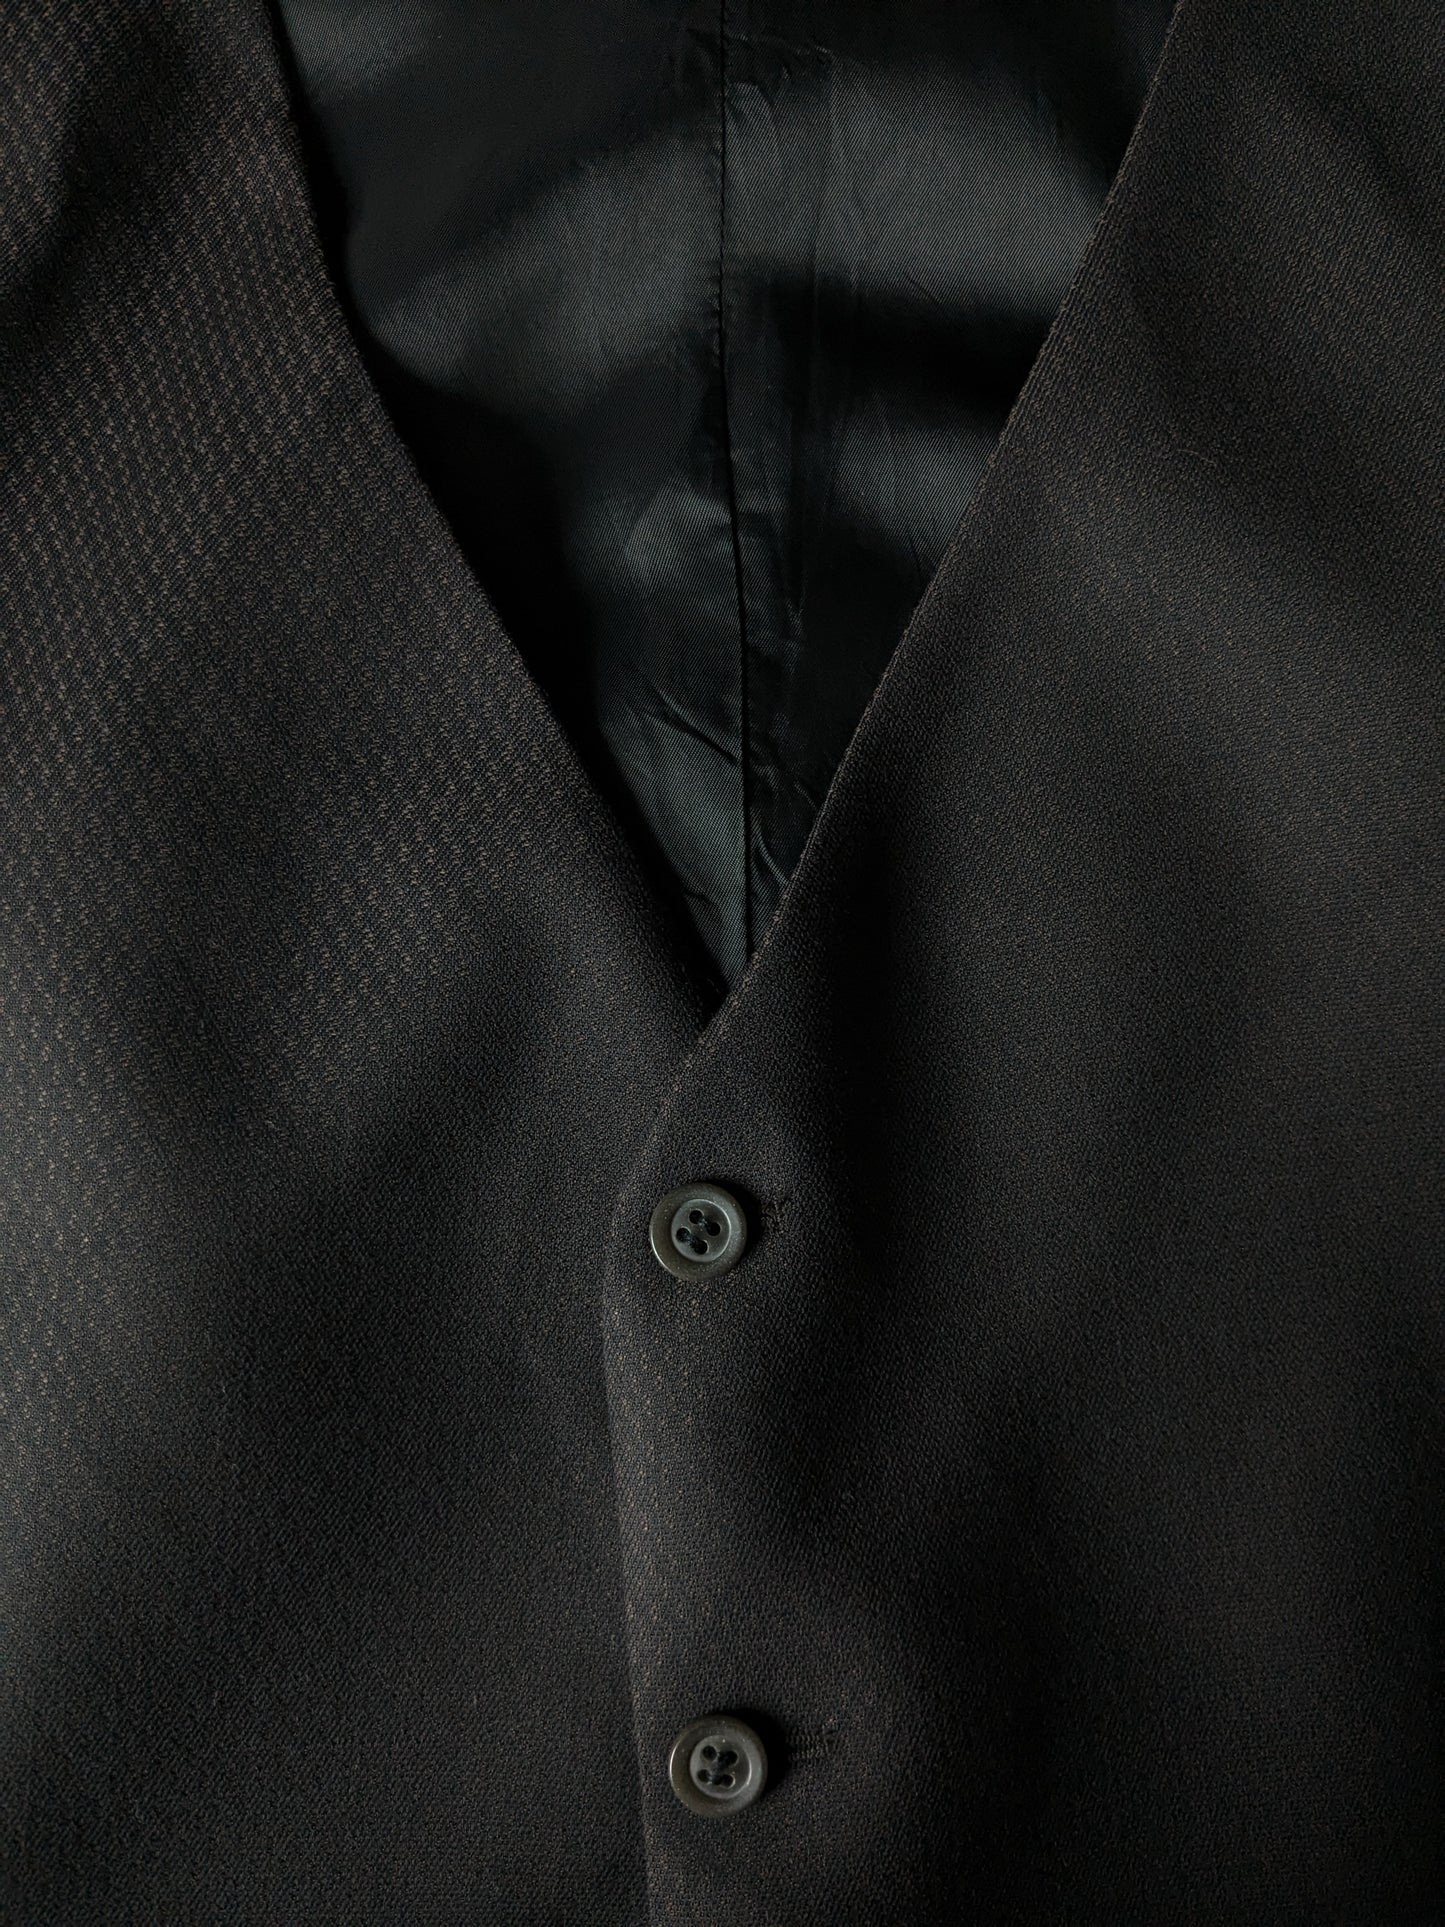 Gilet #340. Braunes schwarzes Motiv mit kleiner innerer Tasche. Größe xl.